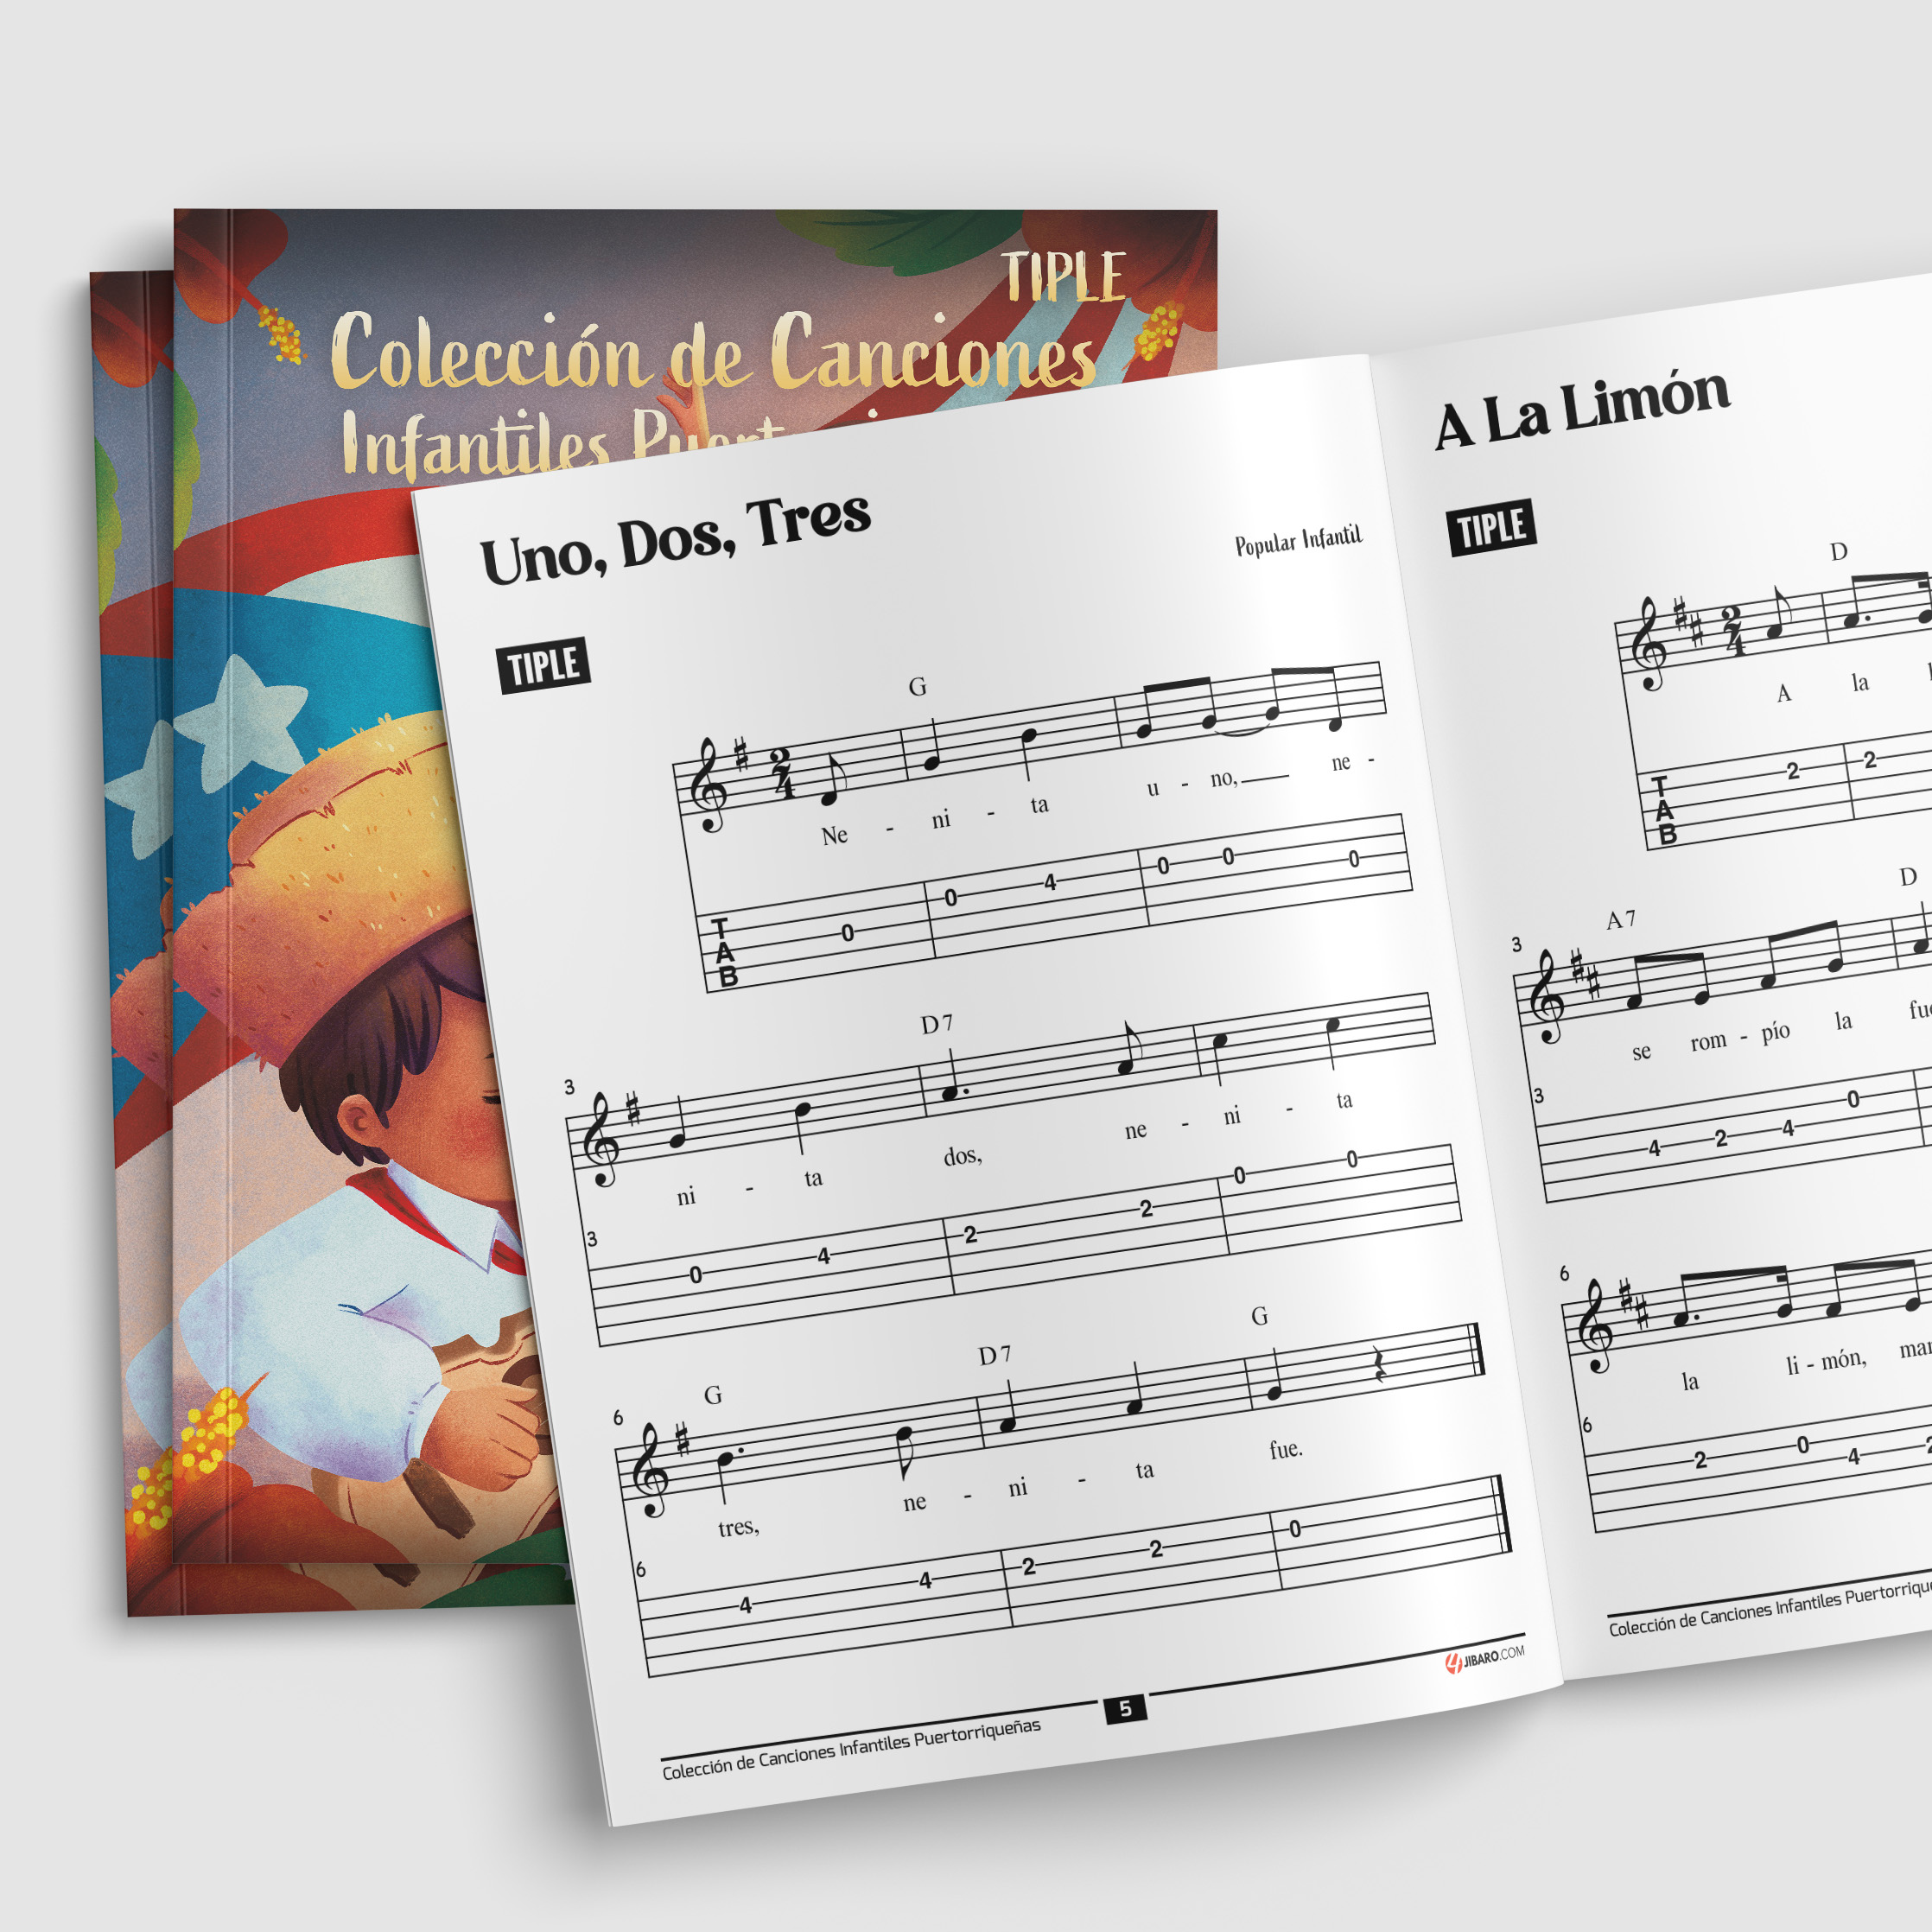 Colección de Canciones Infantiles Puertorriqueña: Clásicos de la Música Infantil Boricua para Cuatro Puertorriqueño